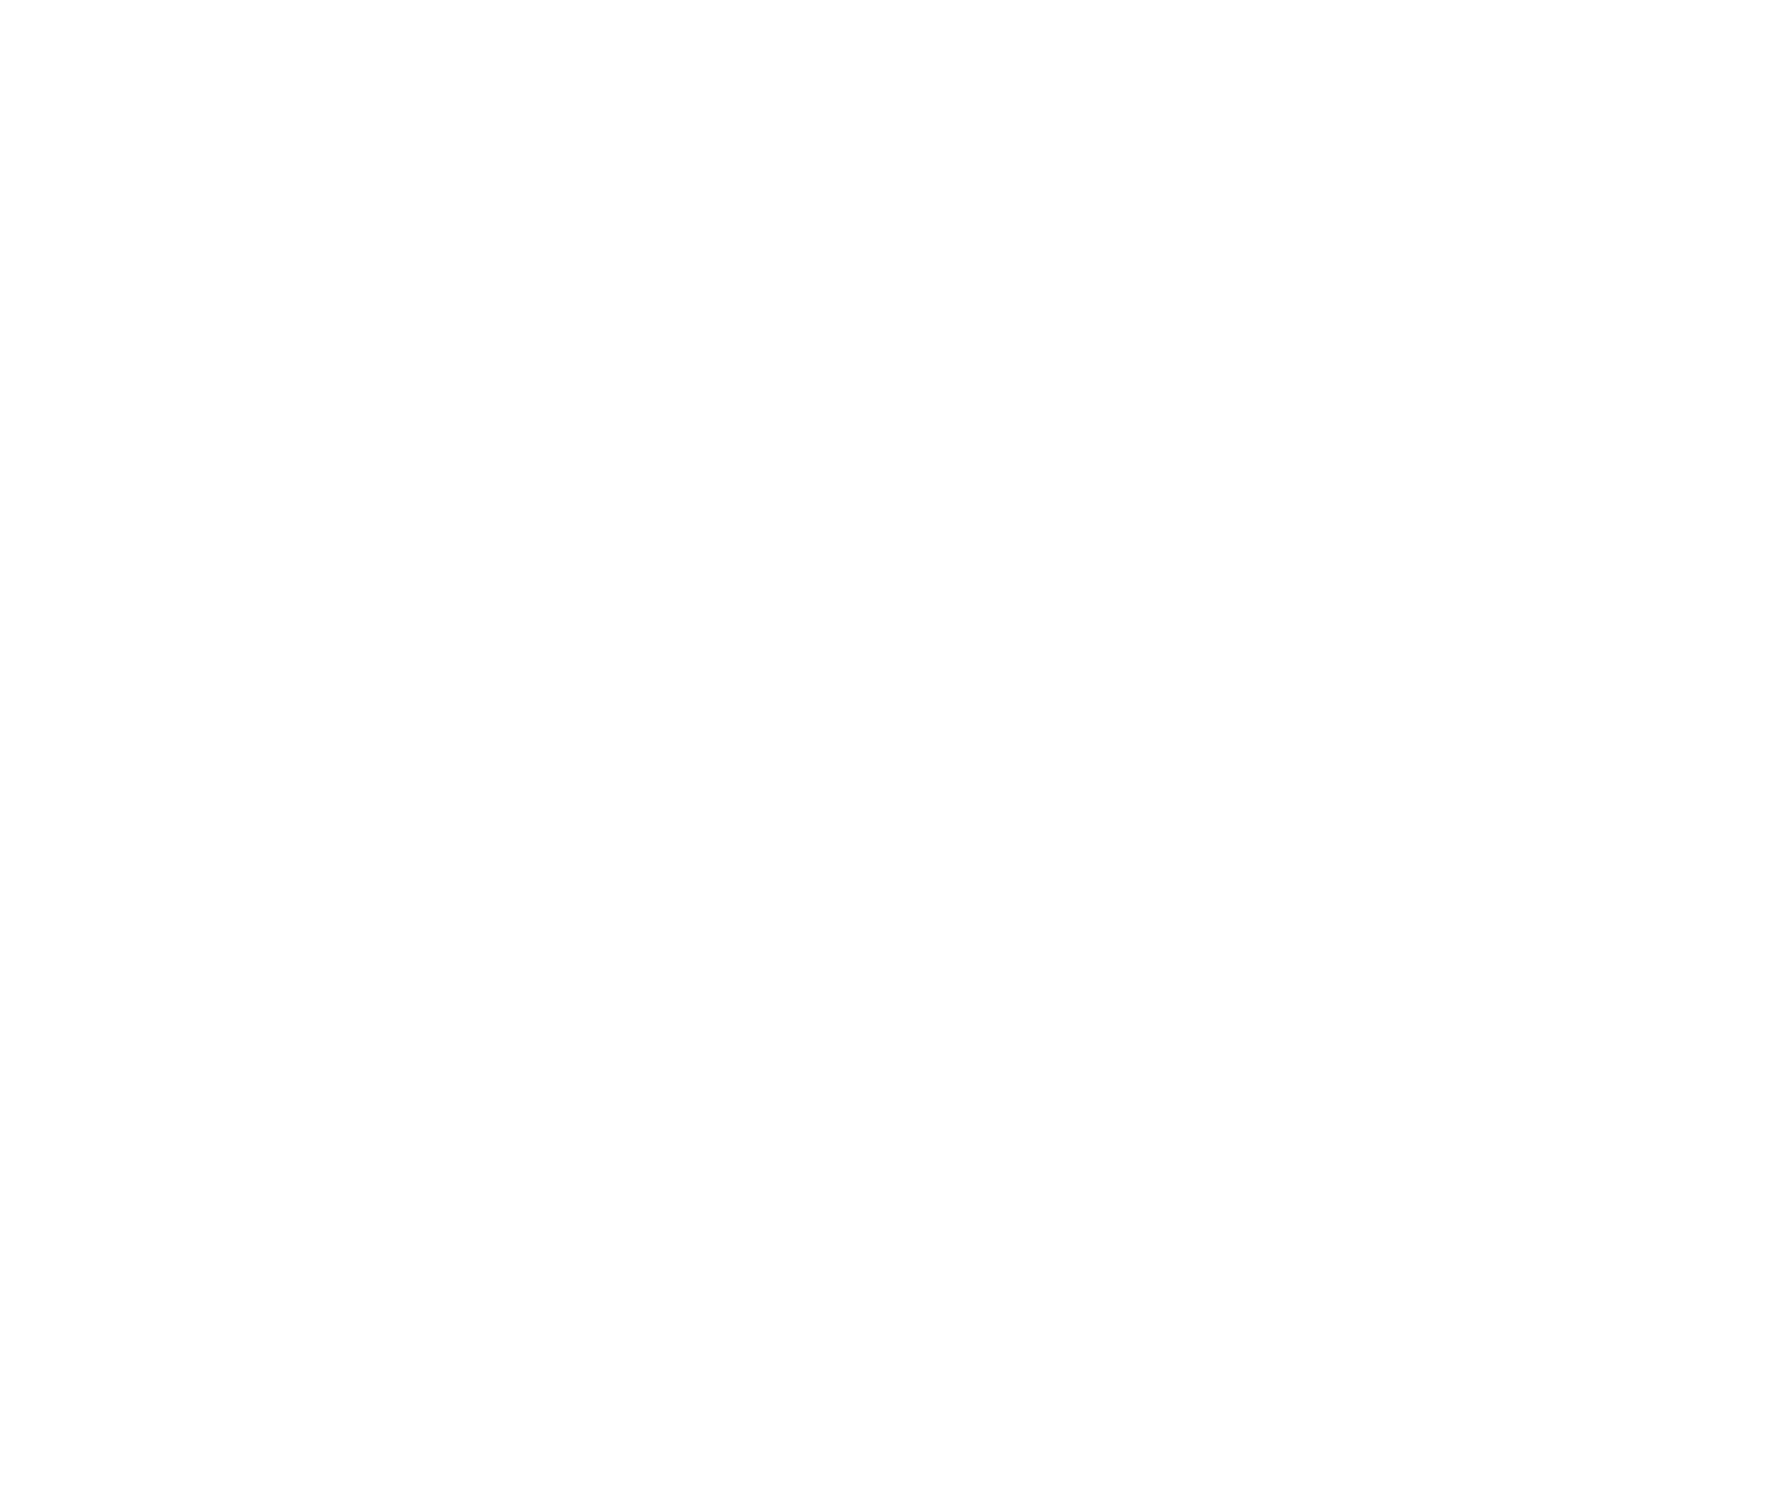 Natura morta cartoccio e quadrato, 1999, acquaforte su rame, colore nero, mm 197x234